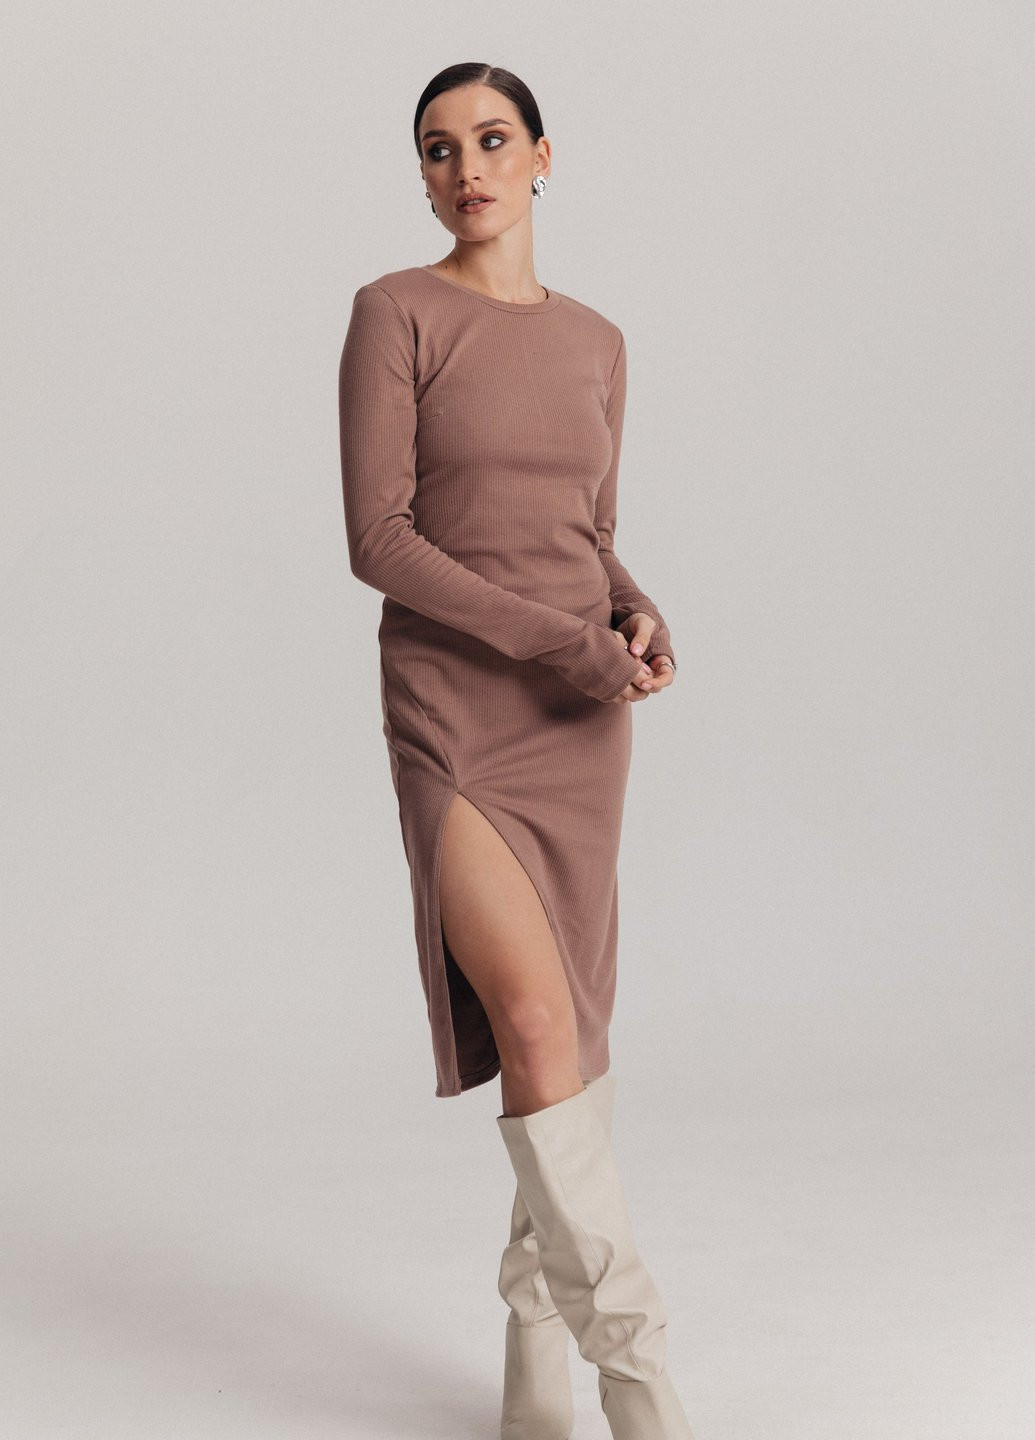 Бежева повсякденний приталена трикотажна сукня бежевого кольору Gepur однотонна